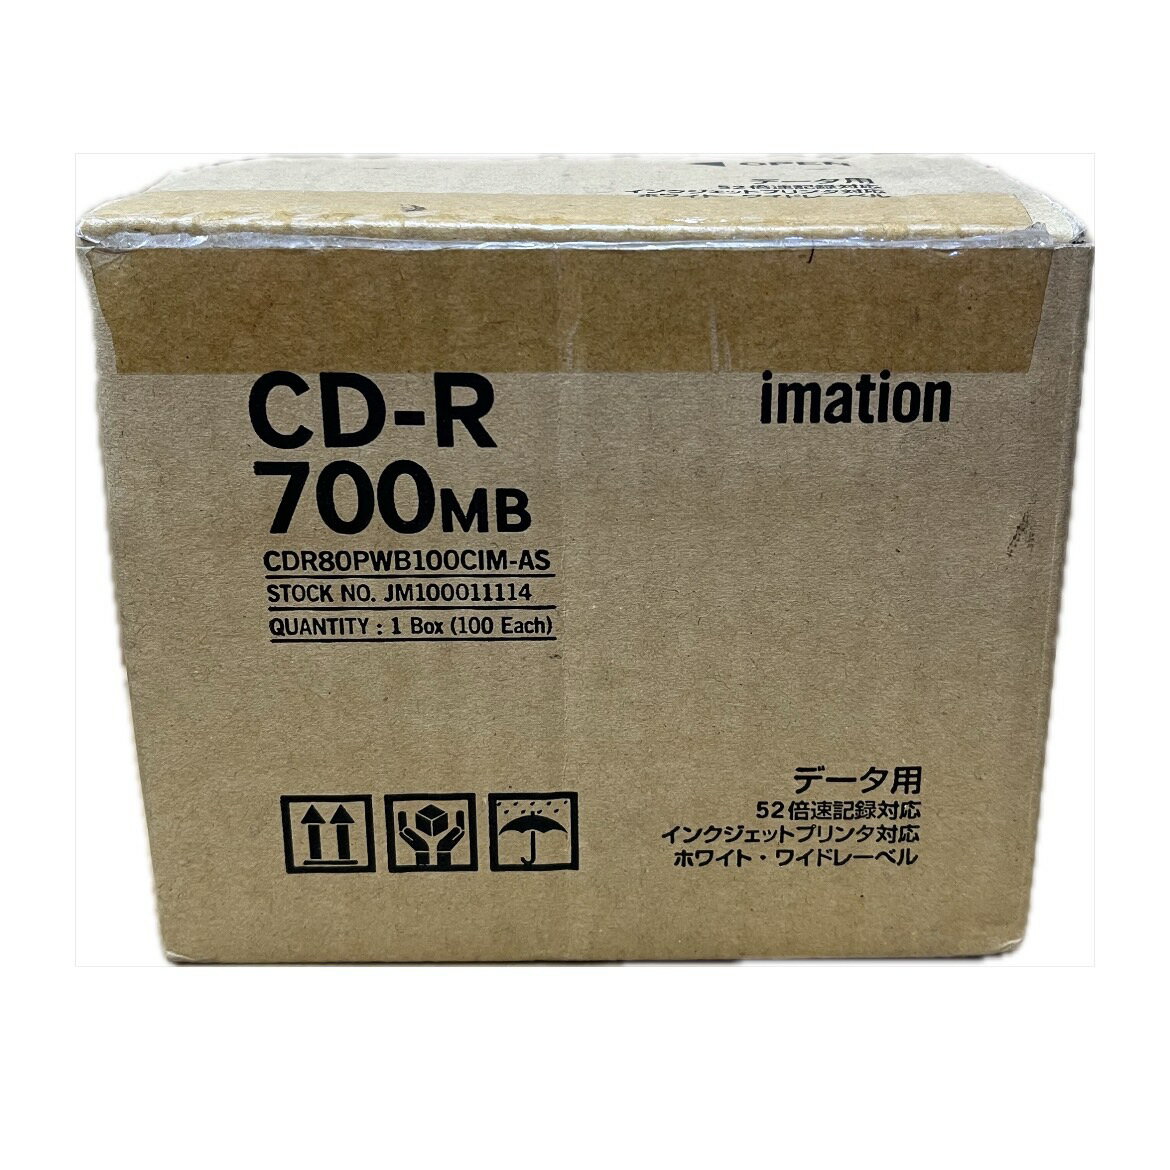 【終売】 訳あり【イメーション】CD-R 700MB データ用 52倍速記録対応 100枚